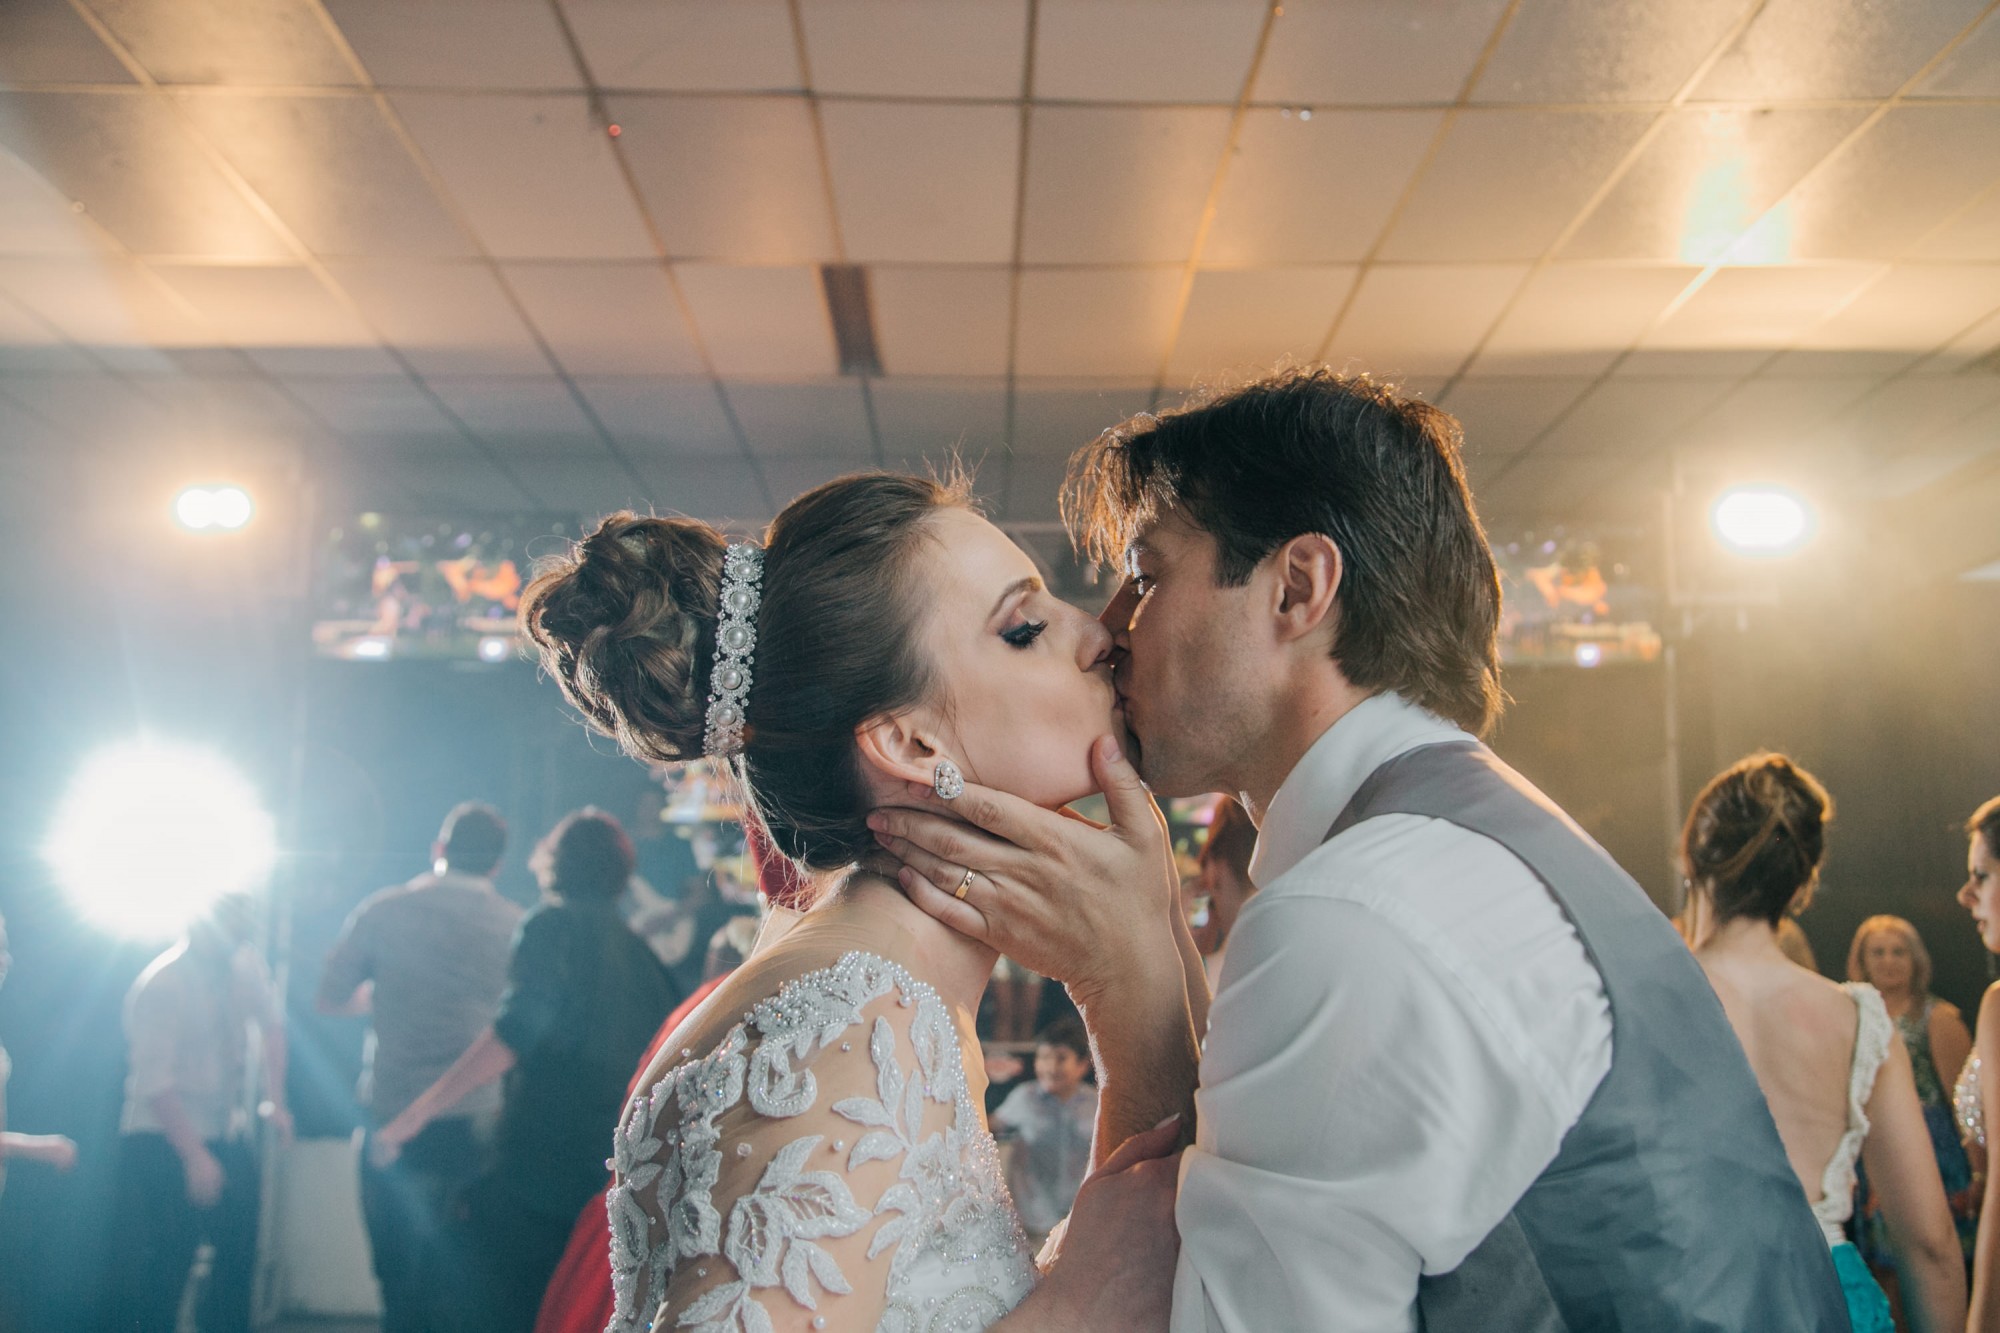 Casamento Anderson e Juliana Fioreli em Iporã Paraná - por Lorran Souza e Léia Sotile - Fotografos de casamentos - JA-4149